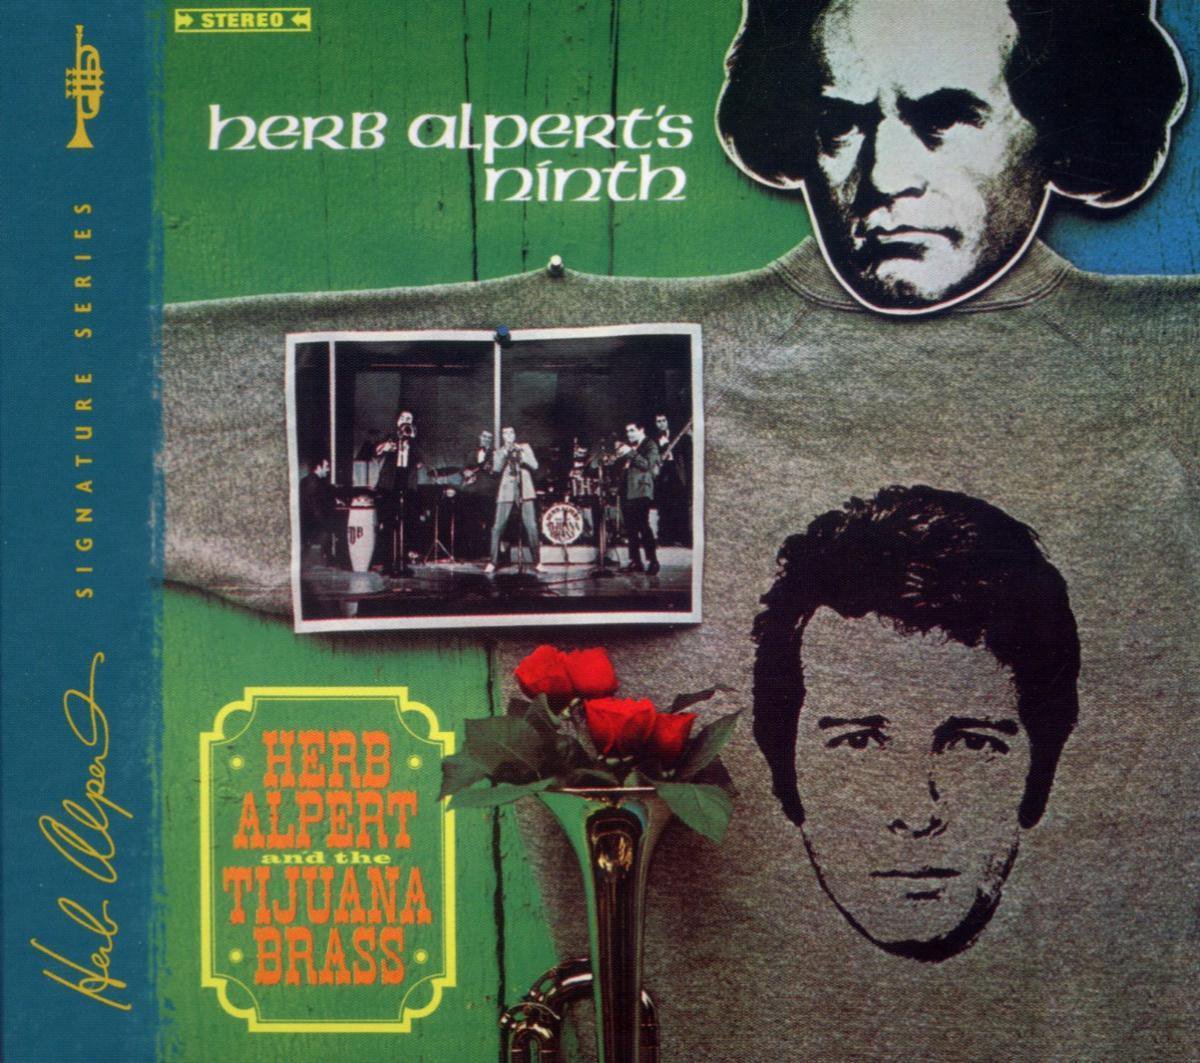 Herb Alpert's Ninth - Herb Alpert & The Tijuana Brass